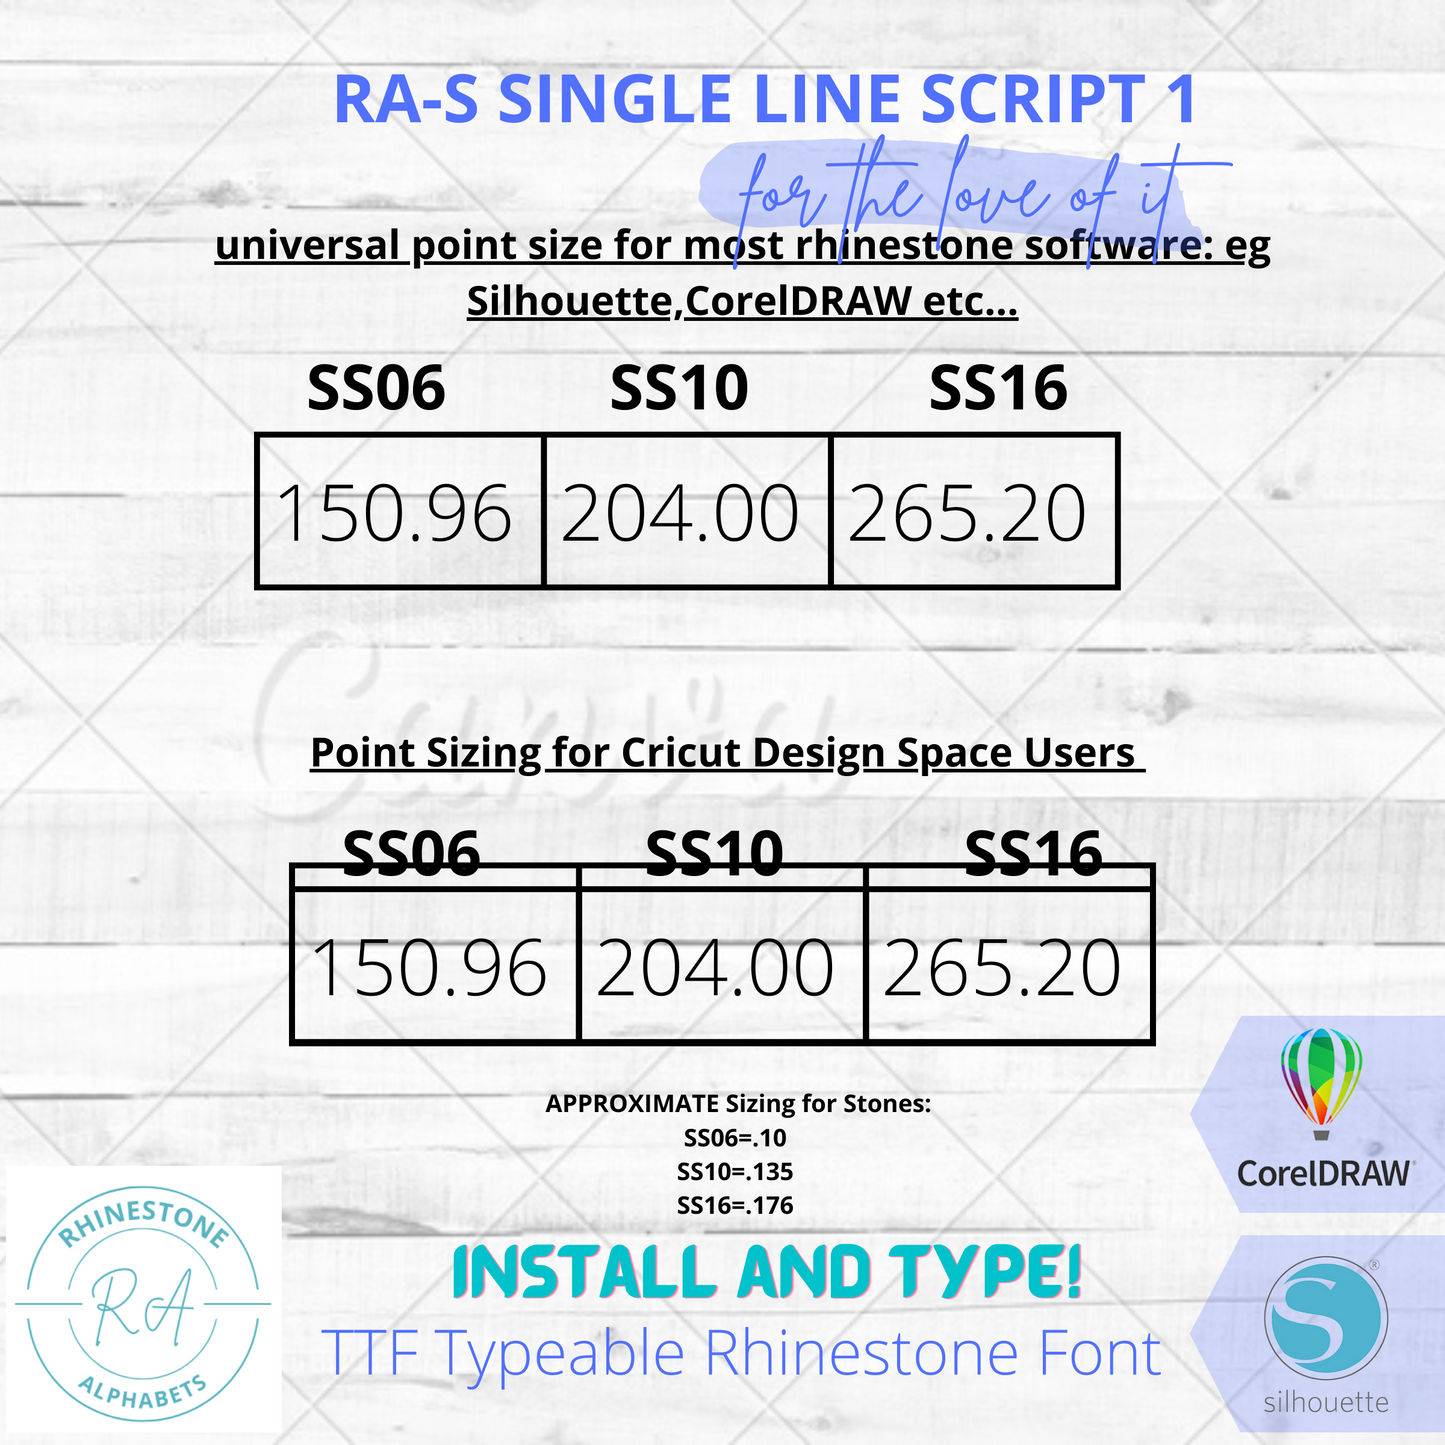 RA-S Singleline Script 1